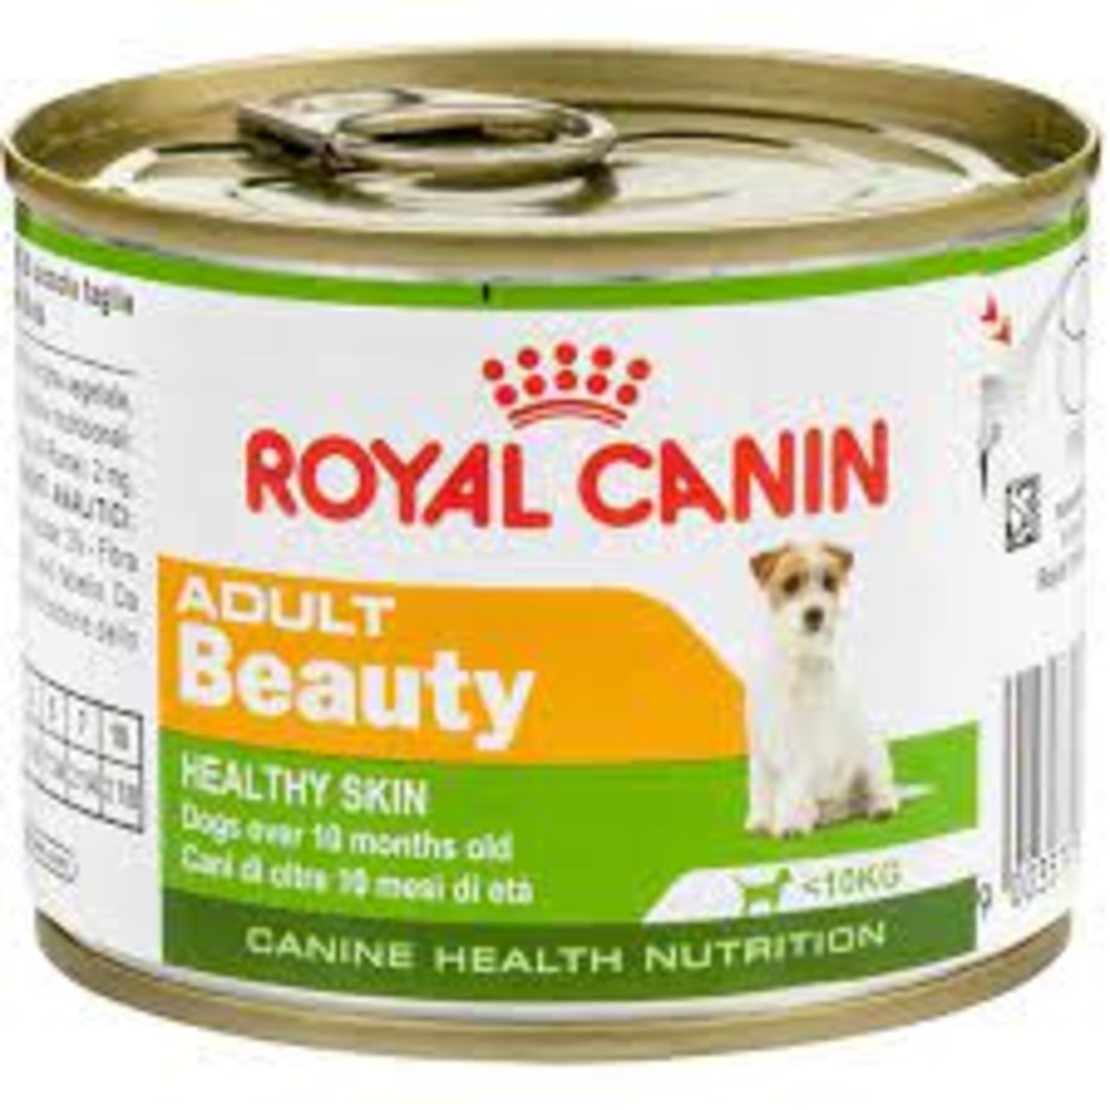 שימור רויאל מיני אדולט לכלבים 195 גרם - Royal Canin Wet Adult Beauty